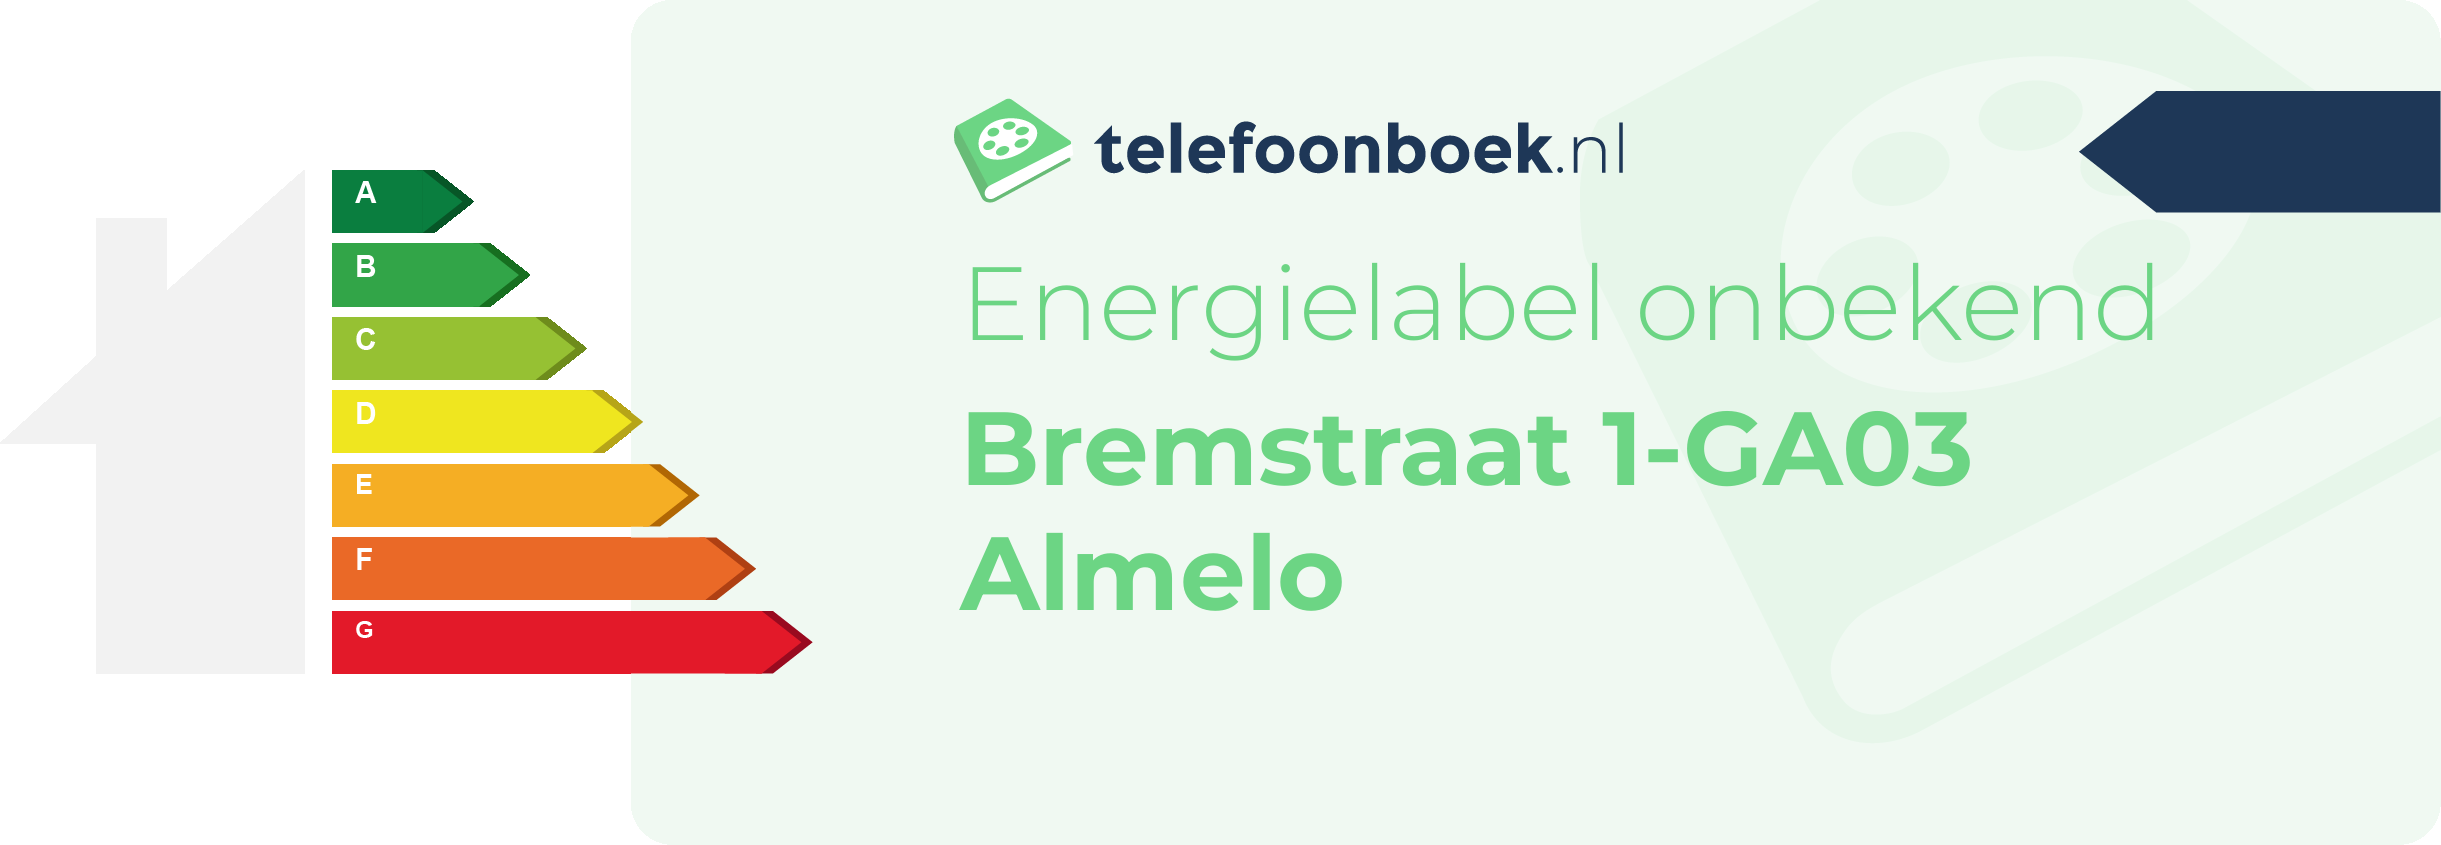 Energielabel Bremstraat 1-GA03 Almelo